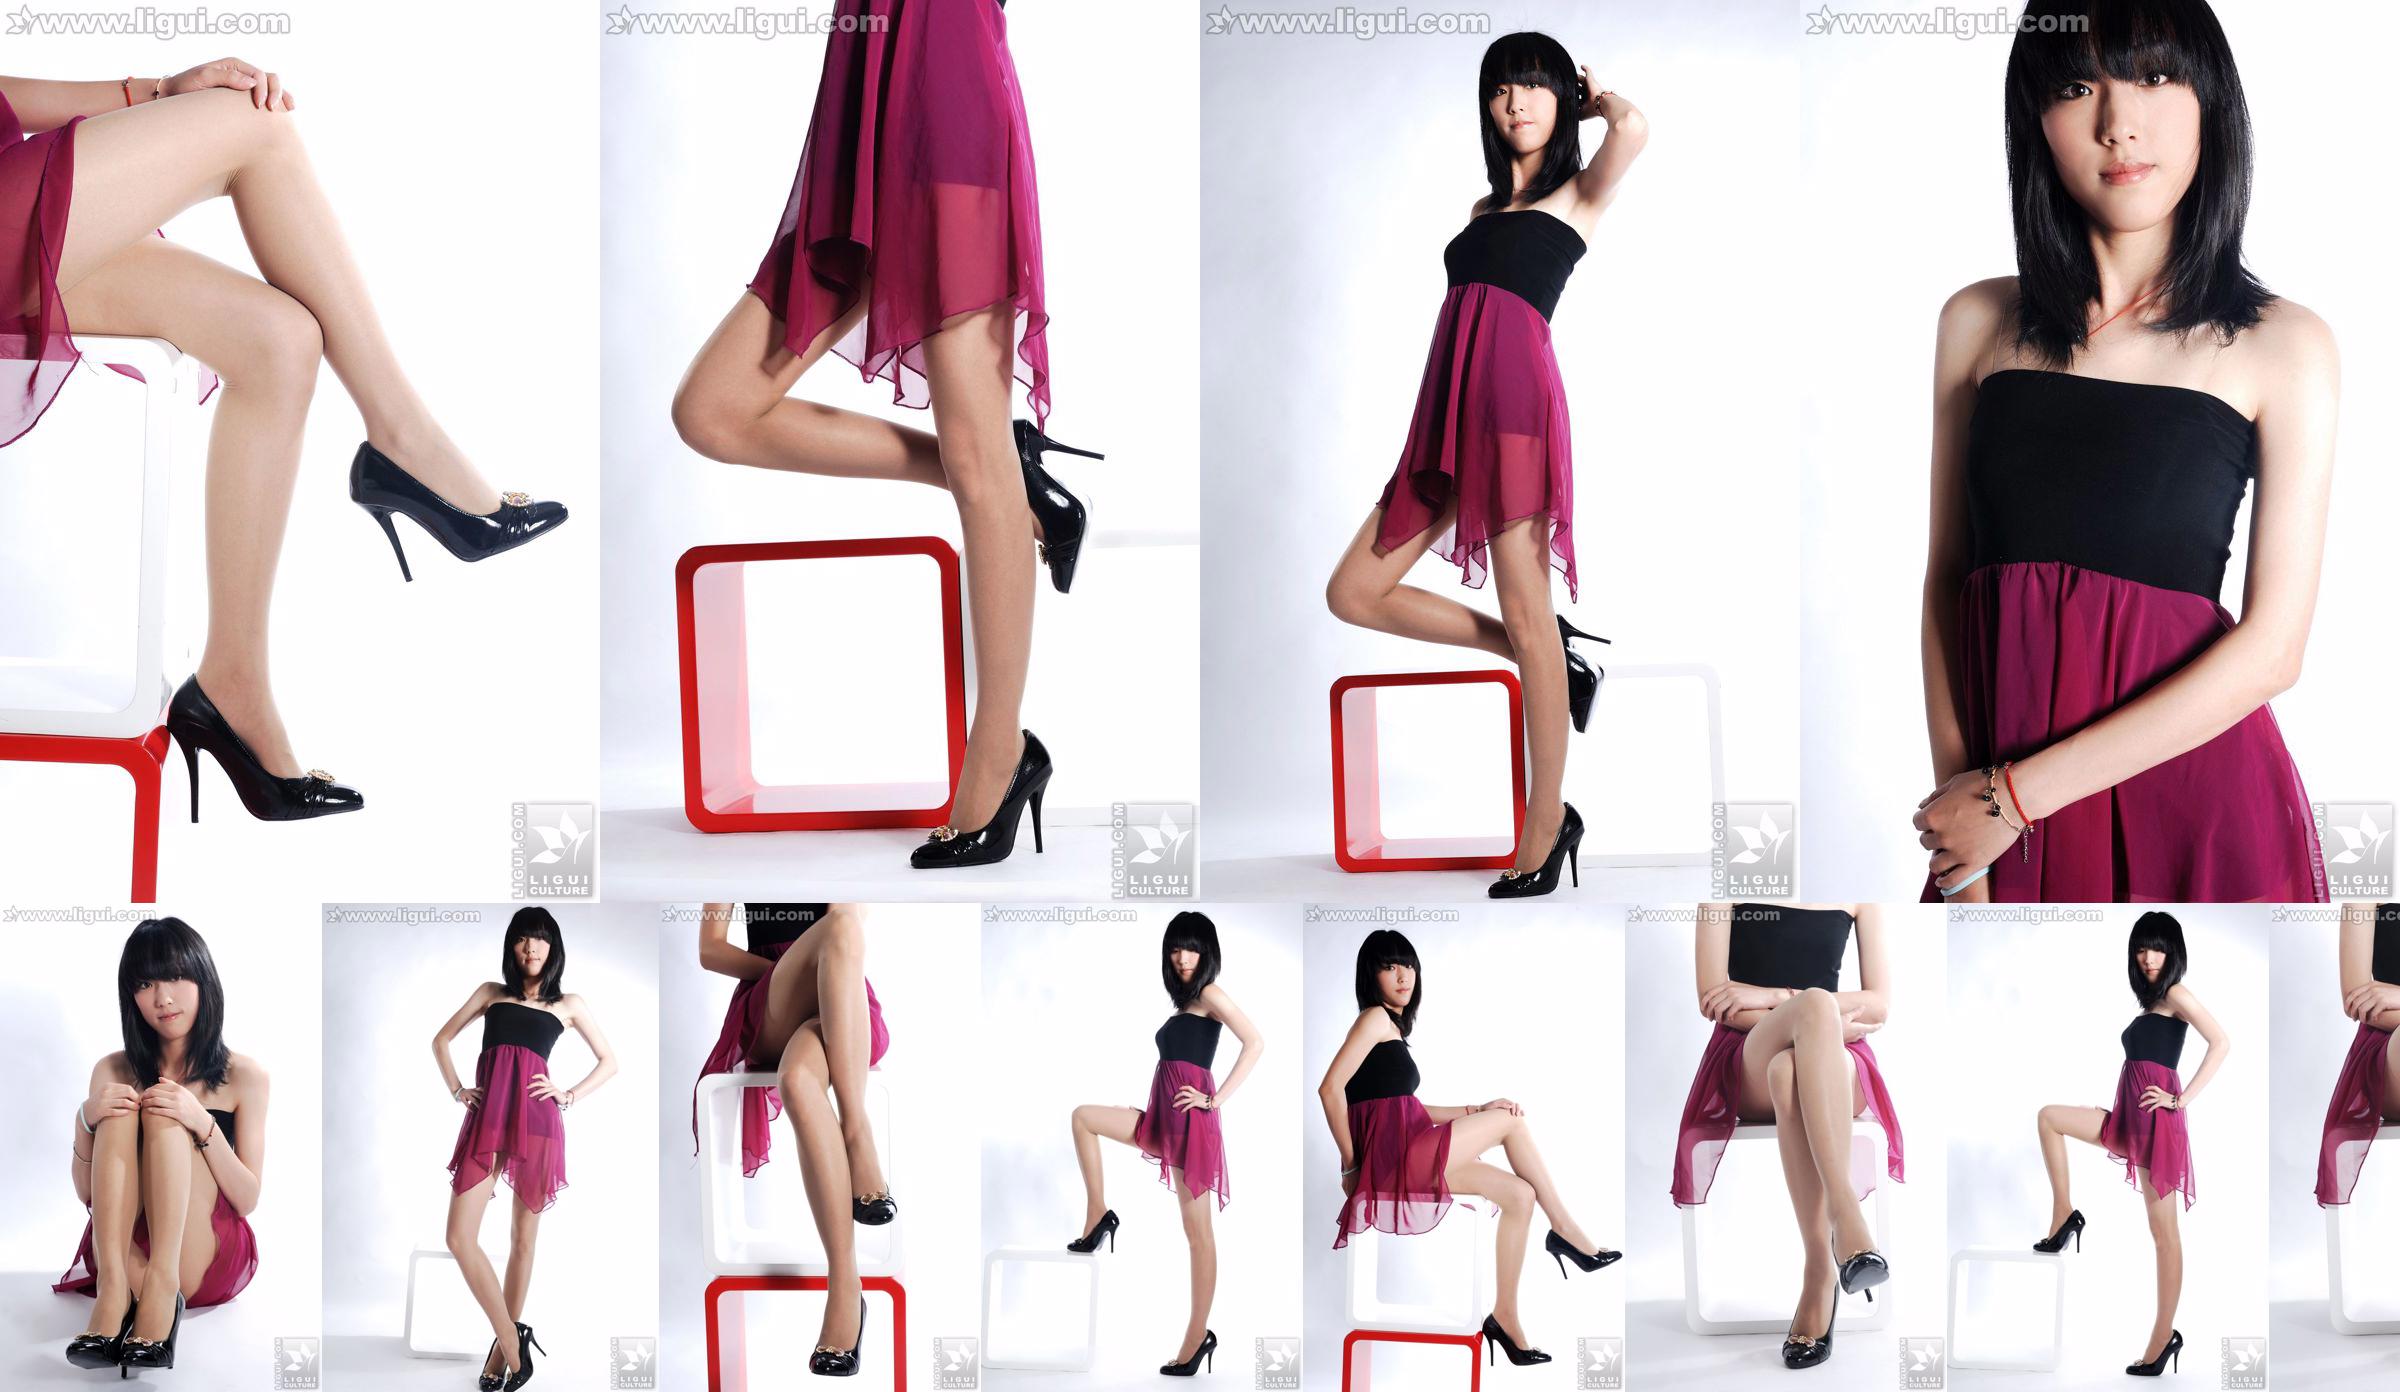 นางแบบ Lu Yingmei "Top Visual High-heeled Blockbuster" [丽柜 LiGui] ภาพถ่ายขาสวยและเท้าหยก No.05076e หน้า 1